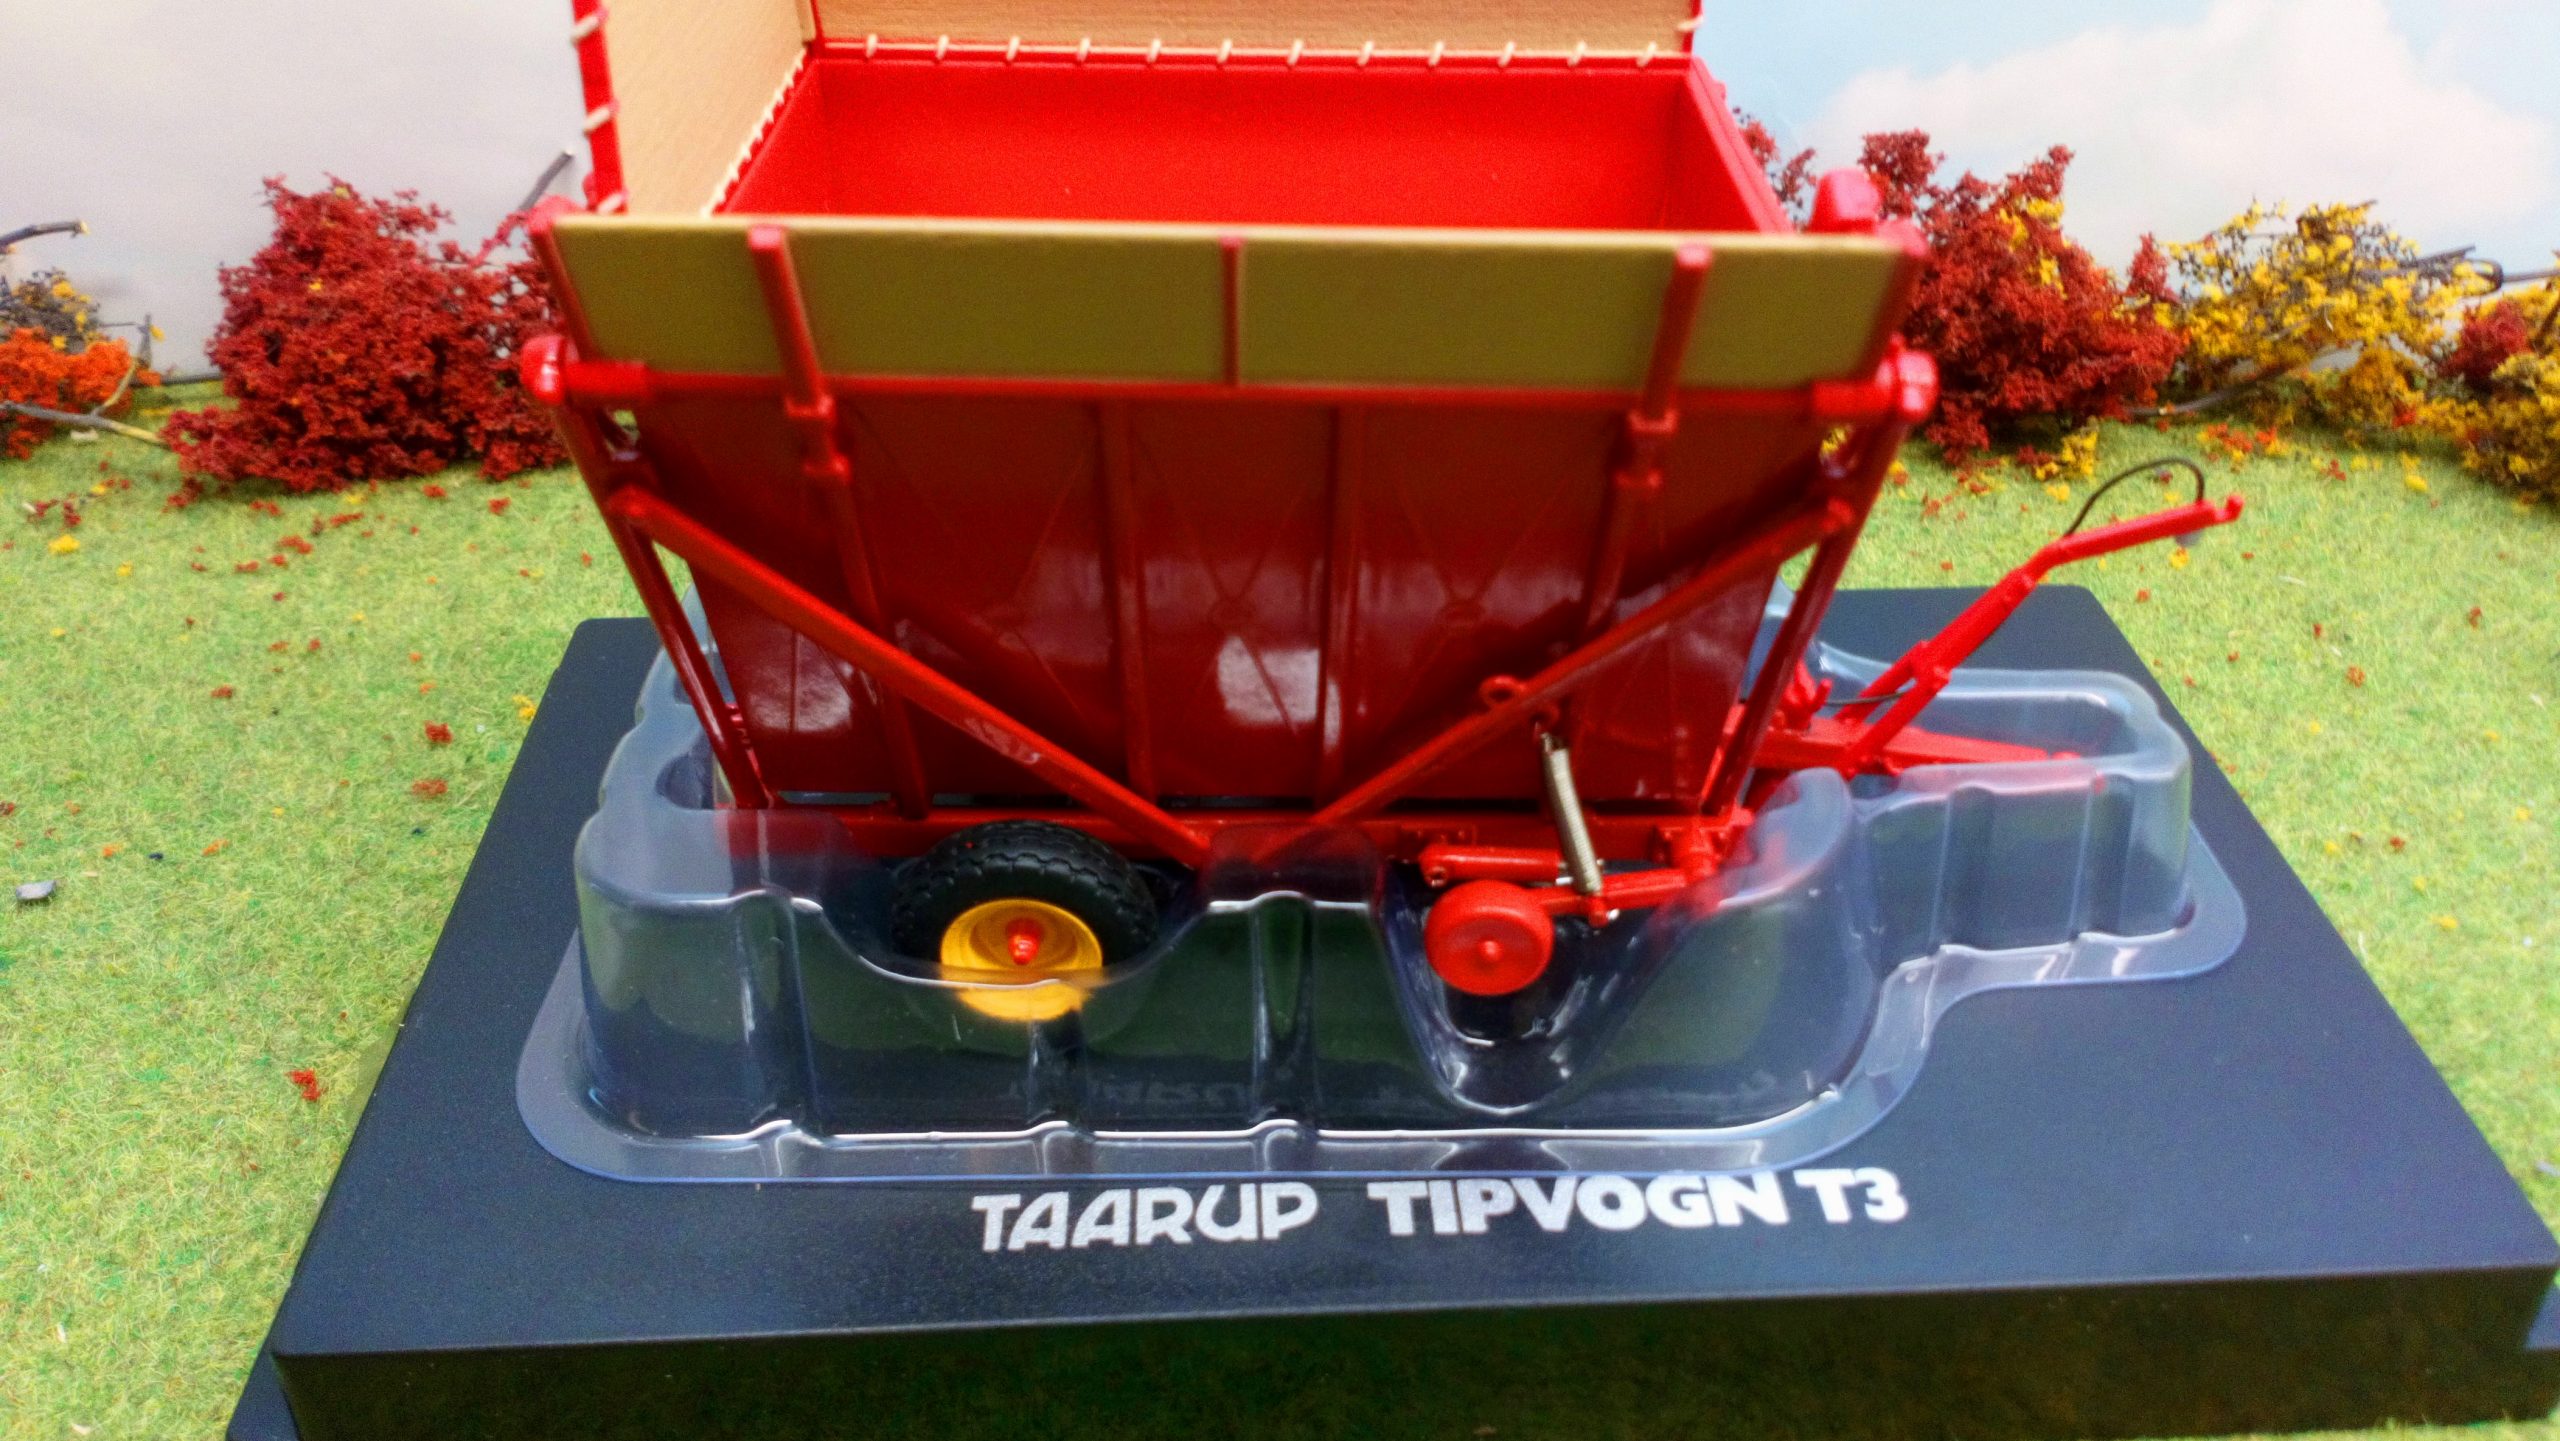 Universal Hobbies – taarup tipvogn t3 uh4964 Maßstab 1/32 